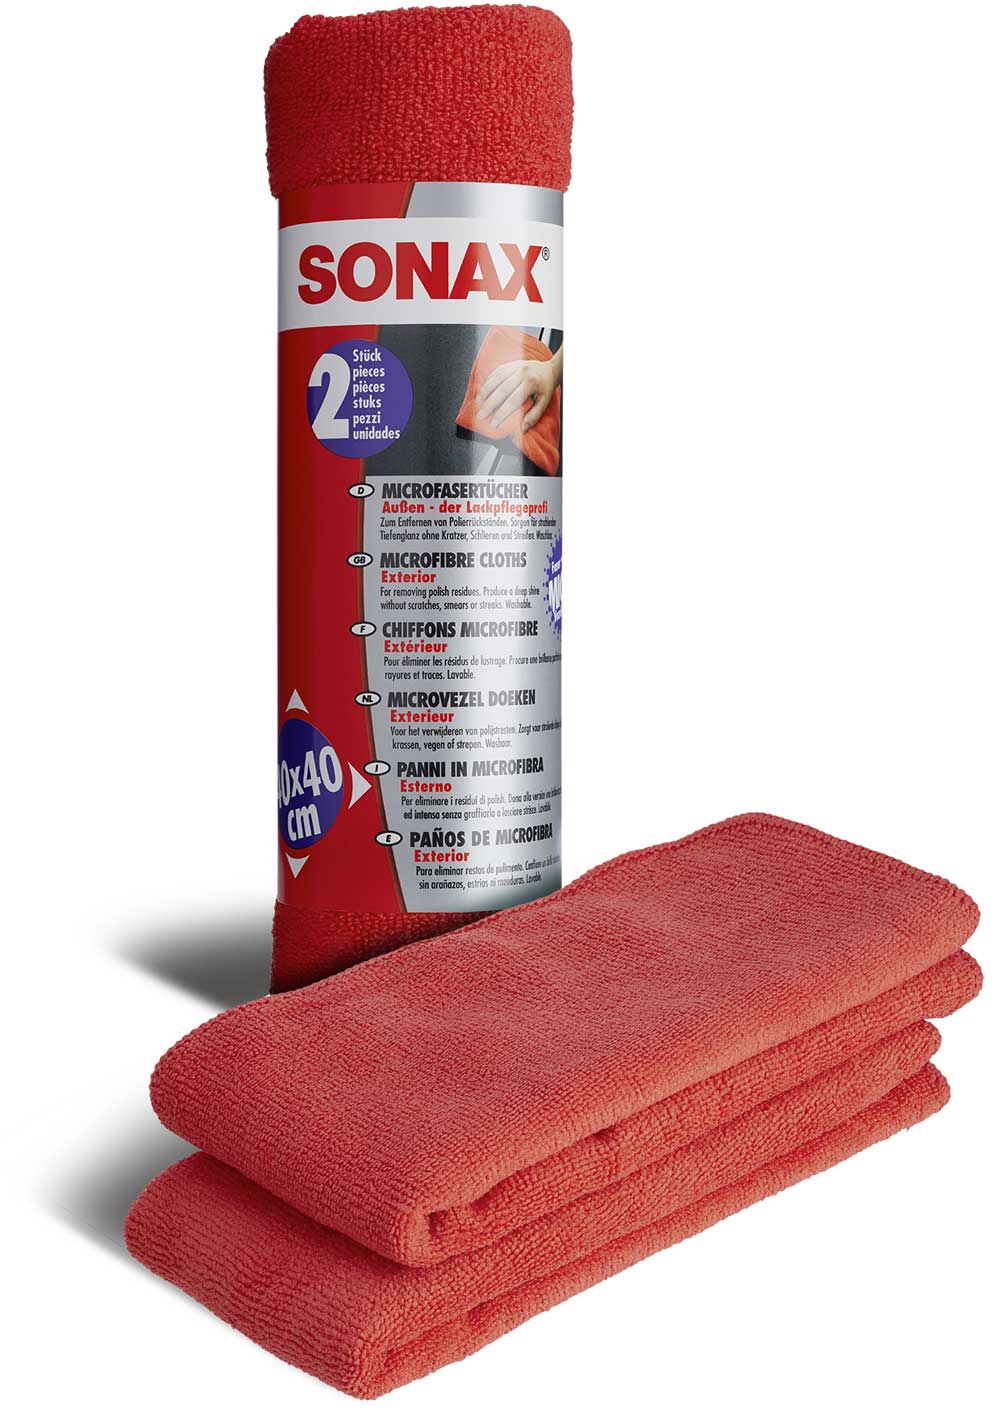 SONAX MicrofaserTücher Außen - der Lackpflegeprofi (2 St.) ApplikationsSchwamm